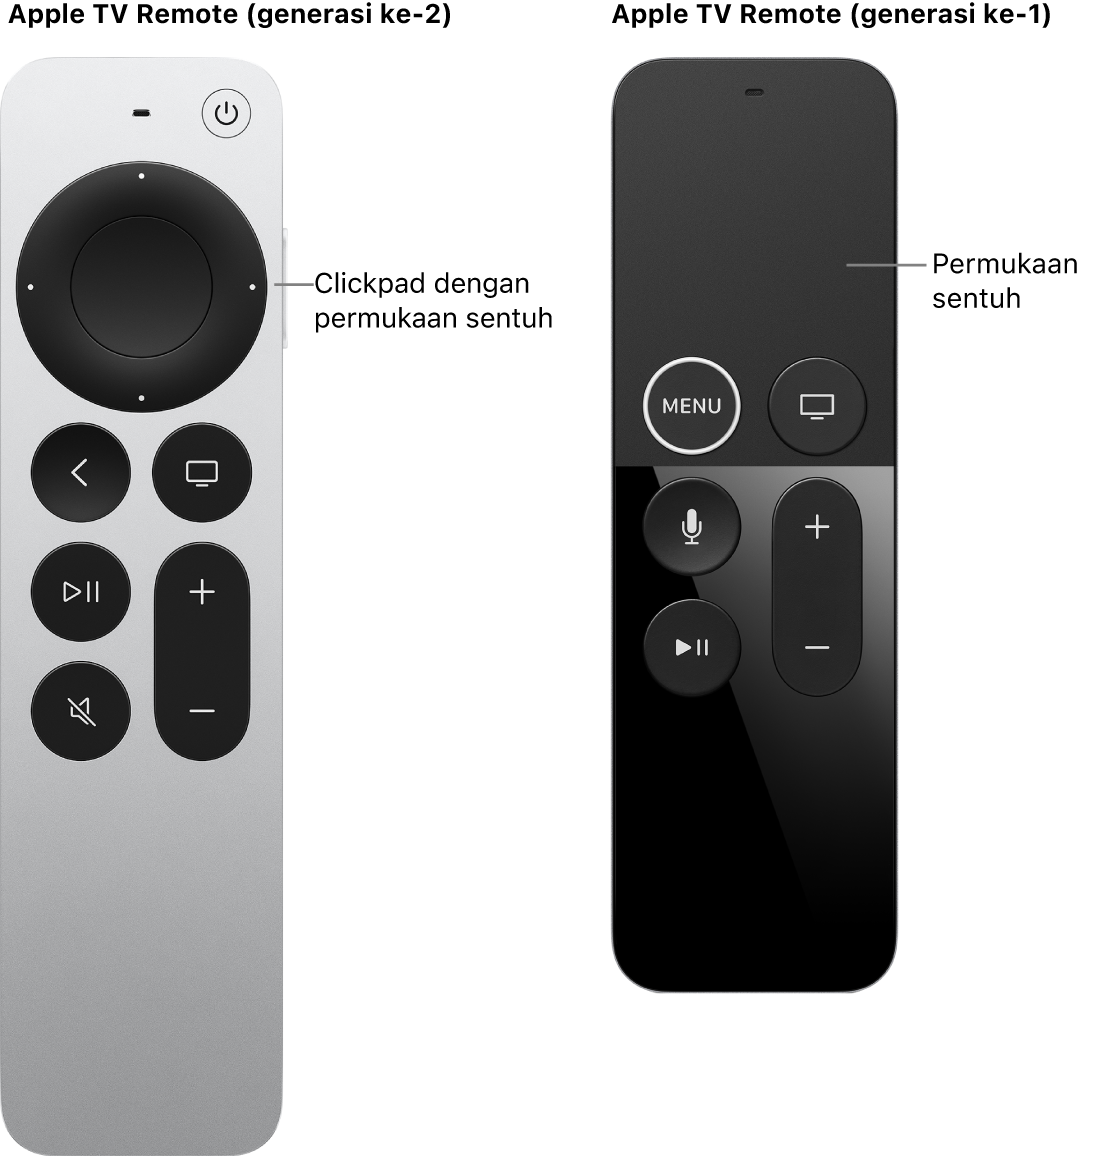 Apple TV Remote (generasi ke-2 dan ke-3) dengan clickpad dan Apple TV Remote (generasi ke-1) dengan permukaan sentuh